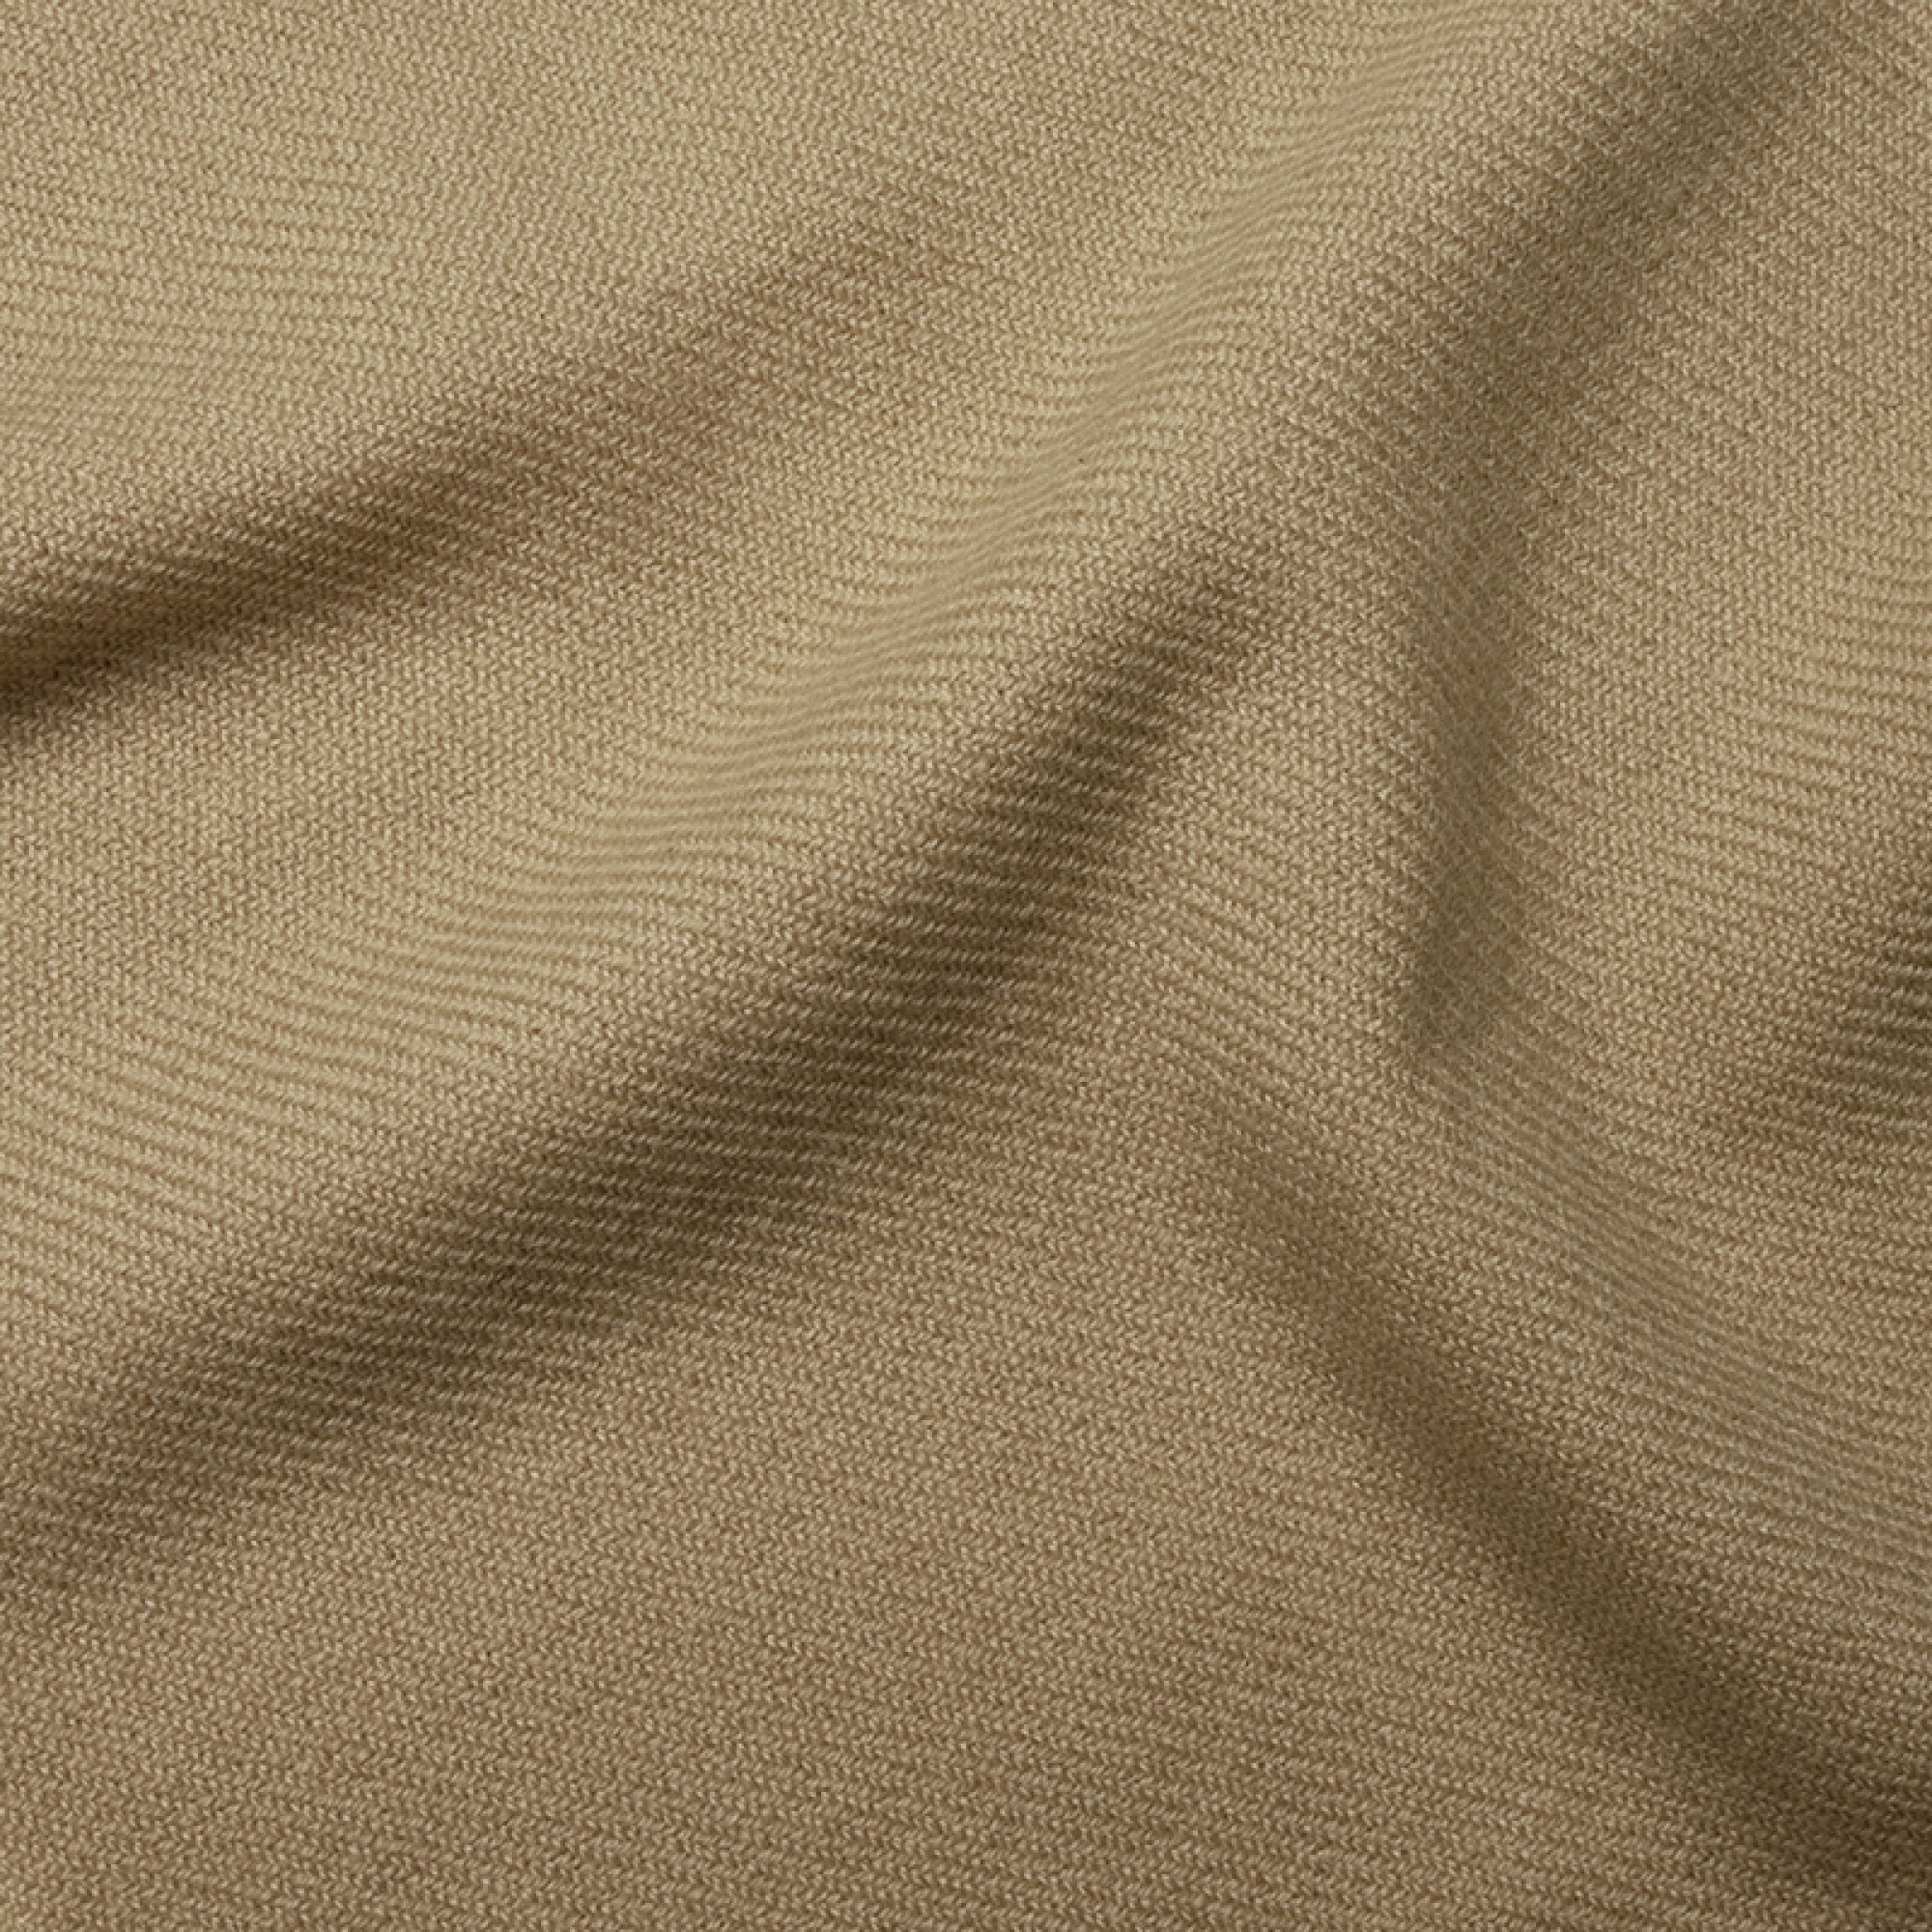 Cashmere accessoires toodoo plain l 220 x 220 beige 220x220cm